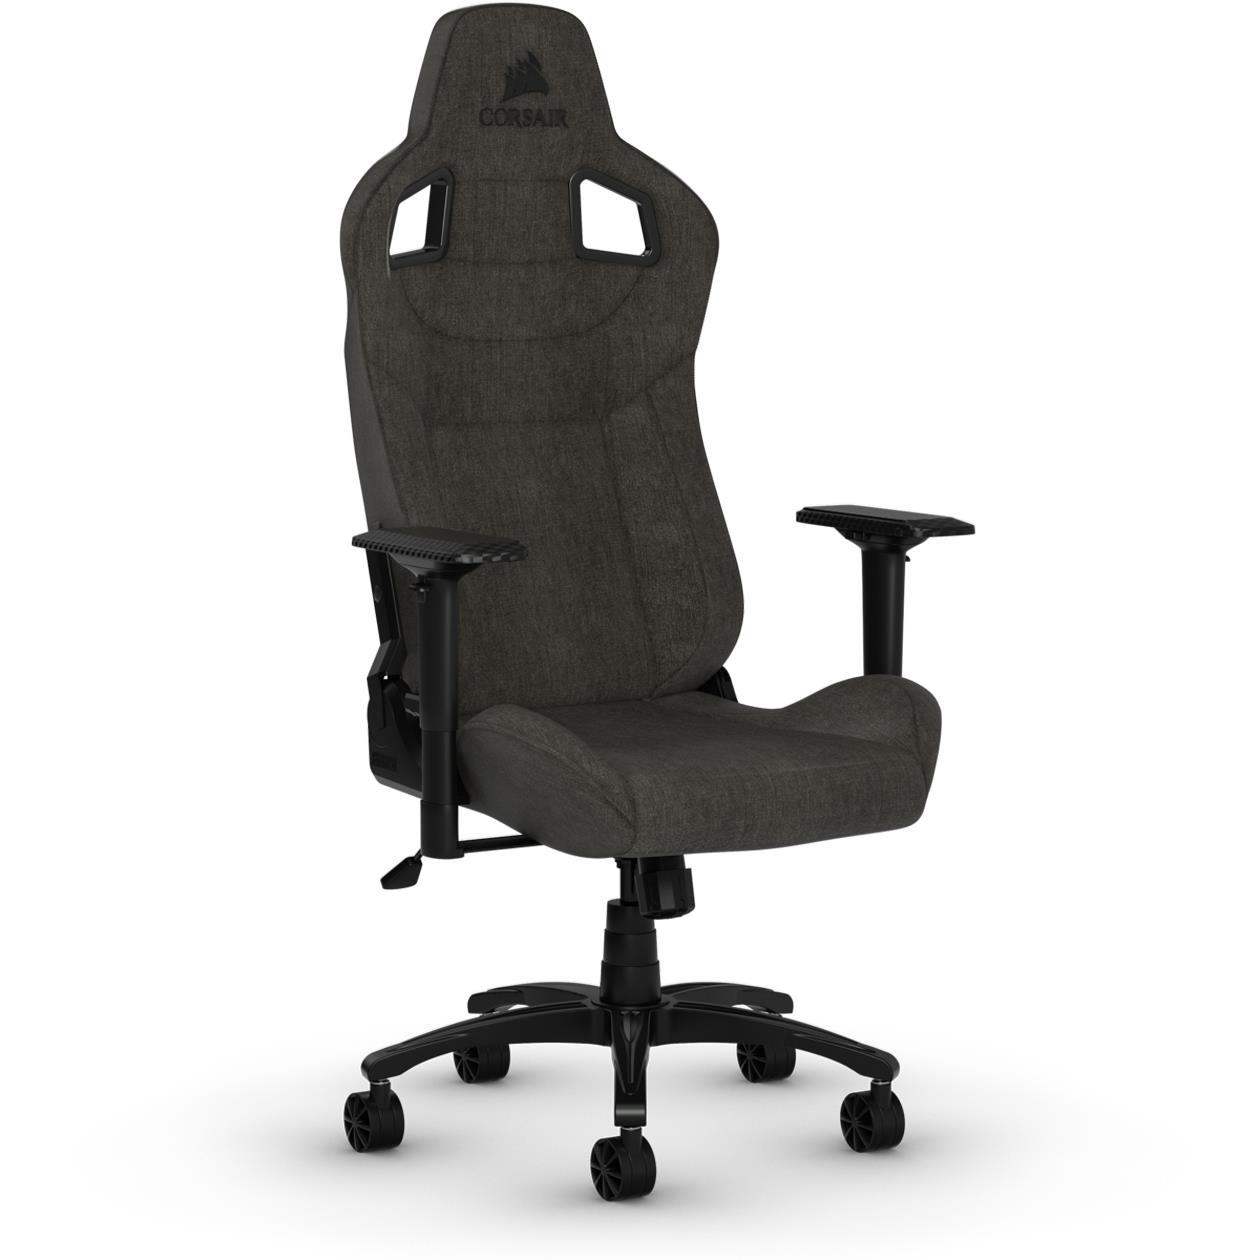 Corsair T3 Rush Gaming Chair Review - Gaming Nexus